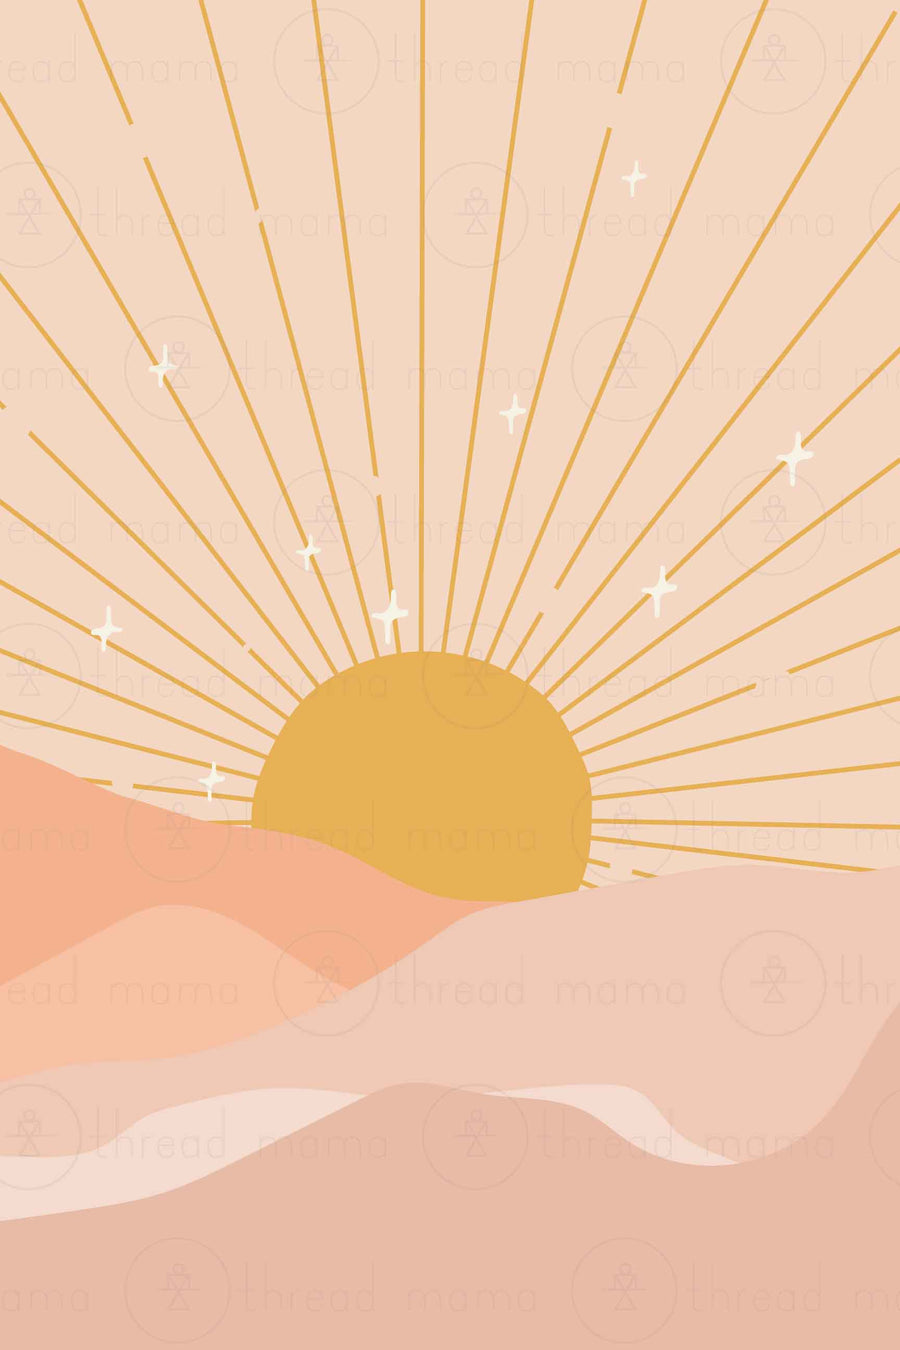 Sun Rays Collection (Printable Poster)